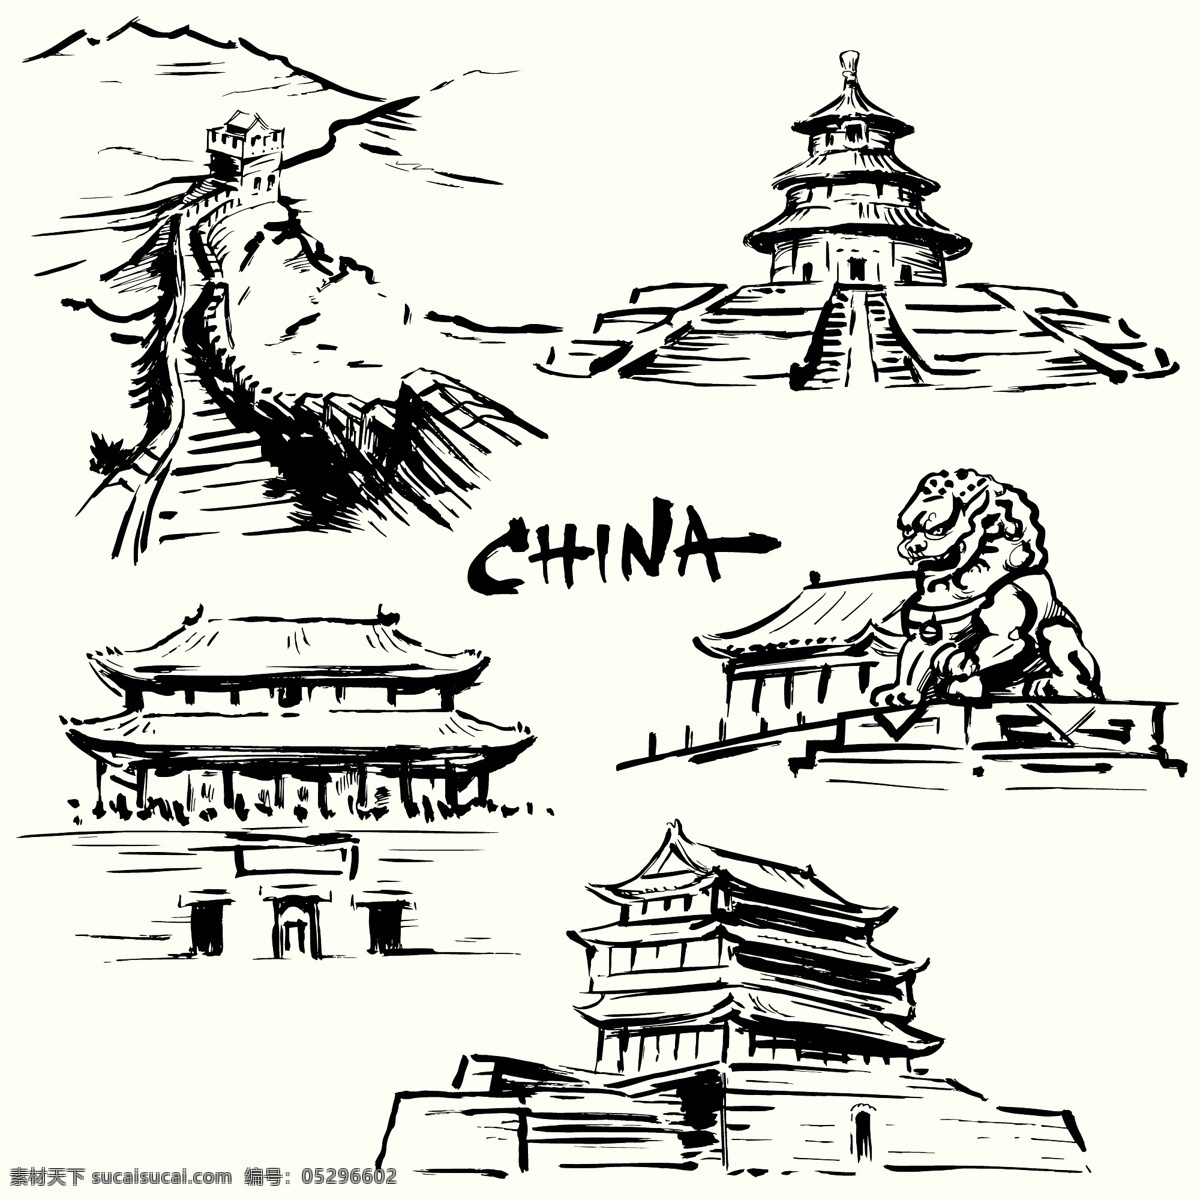 中国 著名 建筑 矢量 手绘 风景名胜 长城 天坛 故宫 石狮子 文化遗产 矢量图